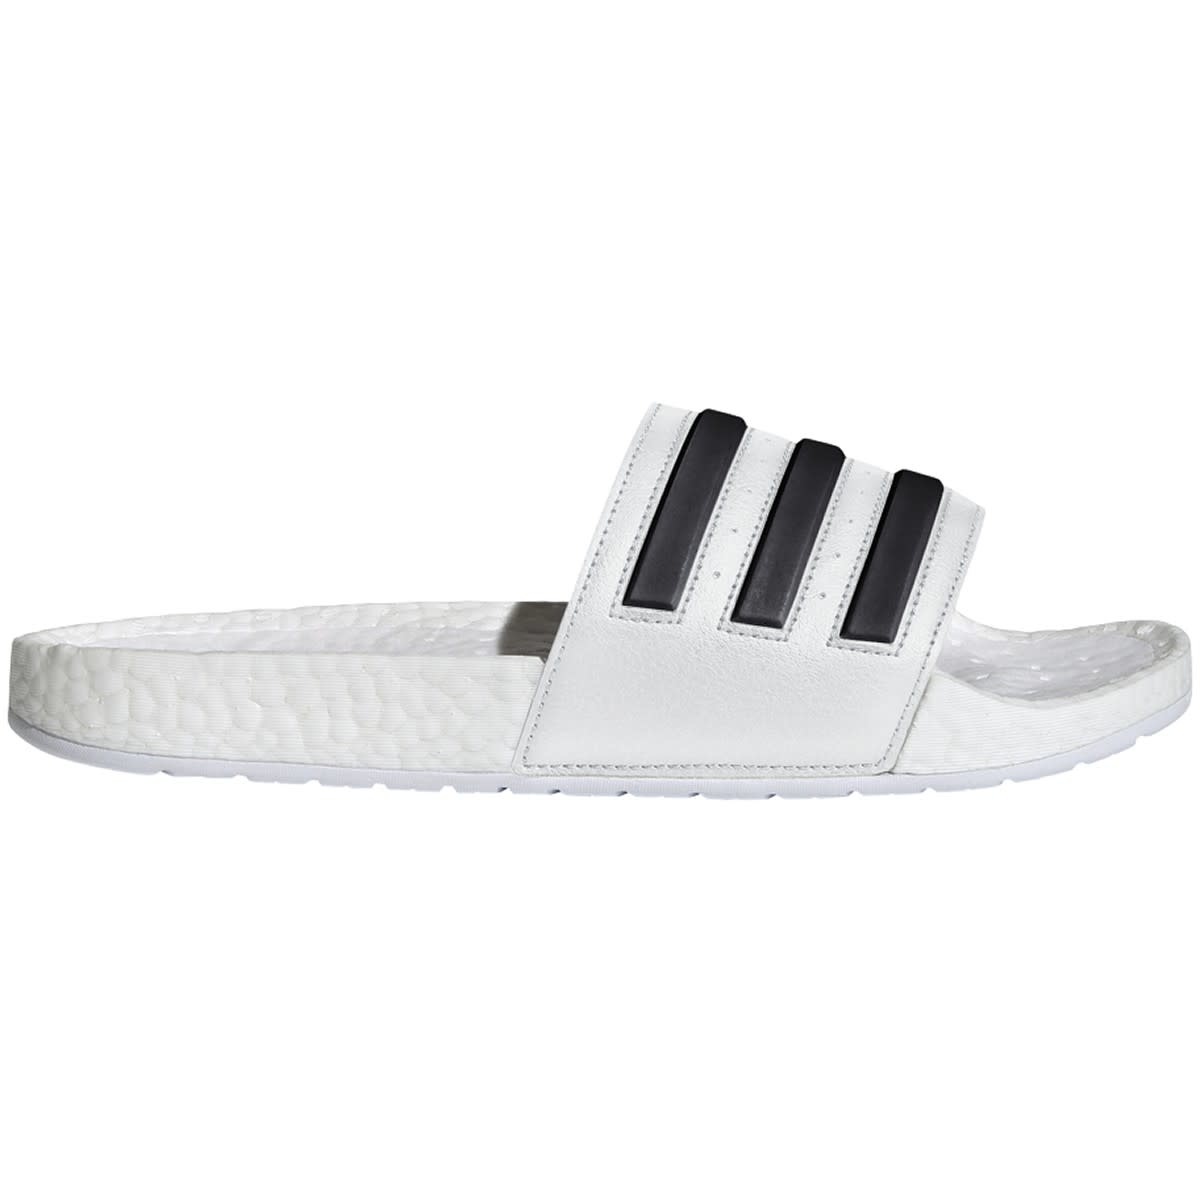 Men's Black & White adilette Aqua Slides | F35543 - Adidas Sandals New With  Box | eBay